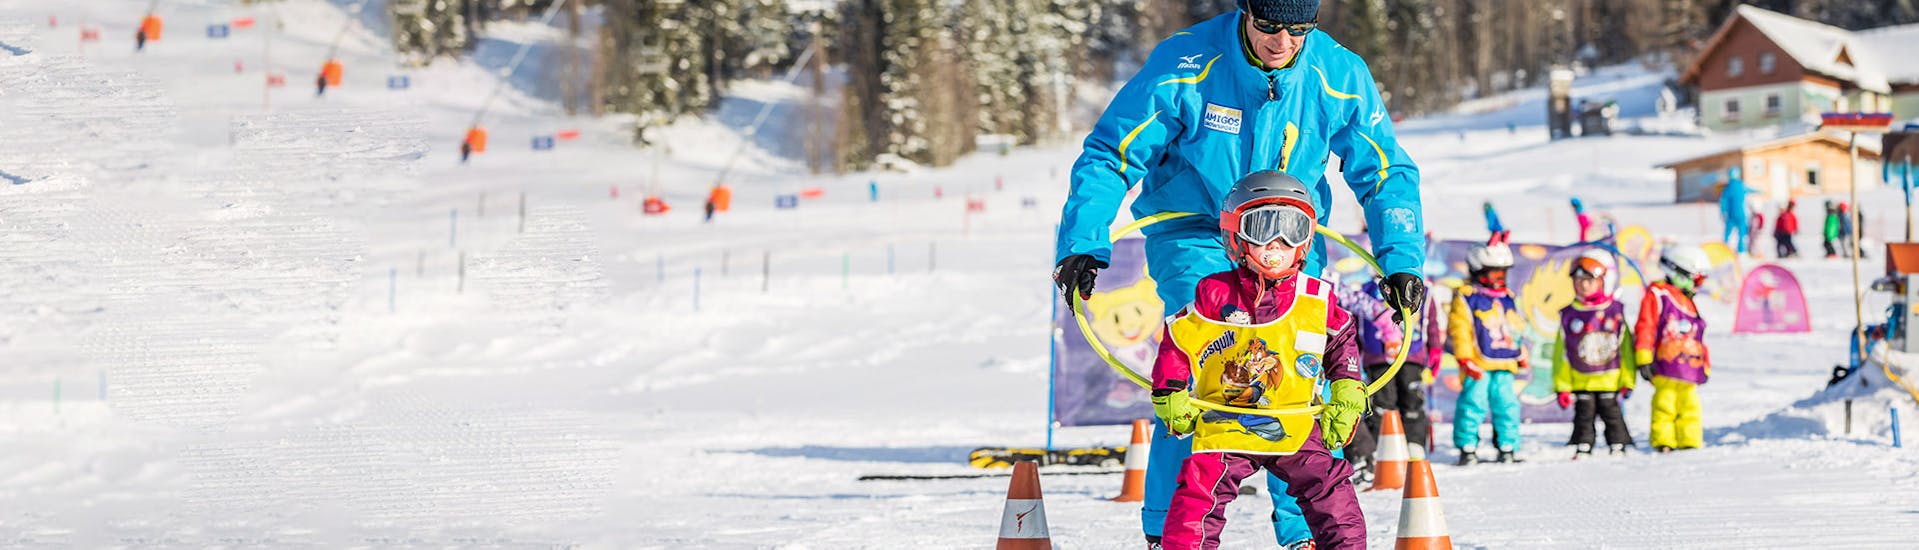 Skilessen voor kinderen vanaf 6 jaar voor alle niveaus.